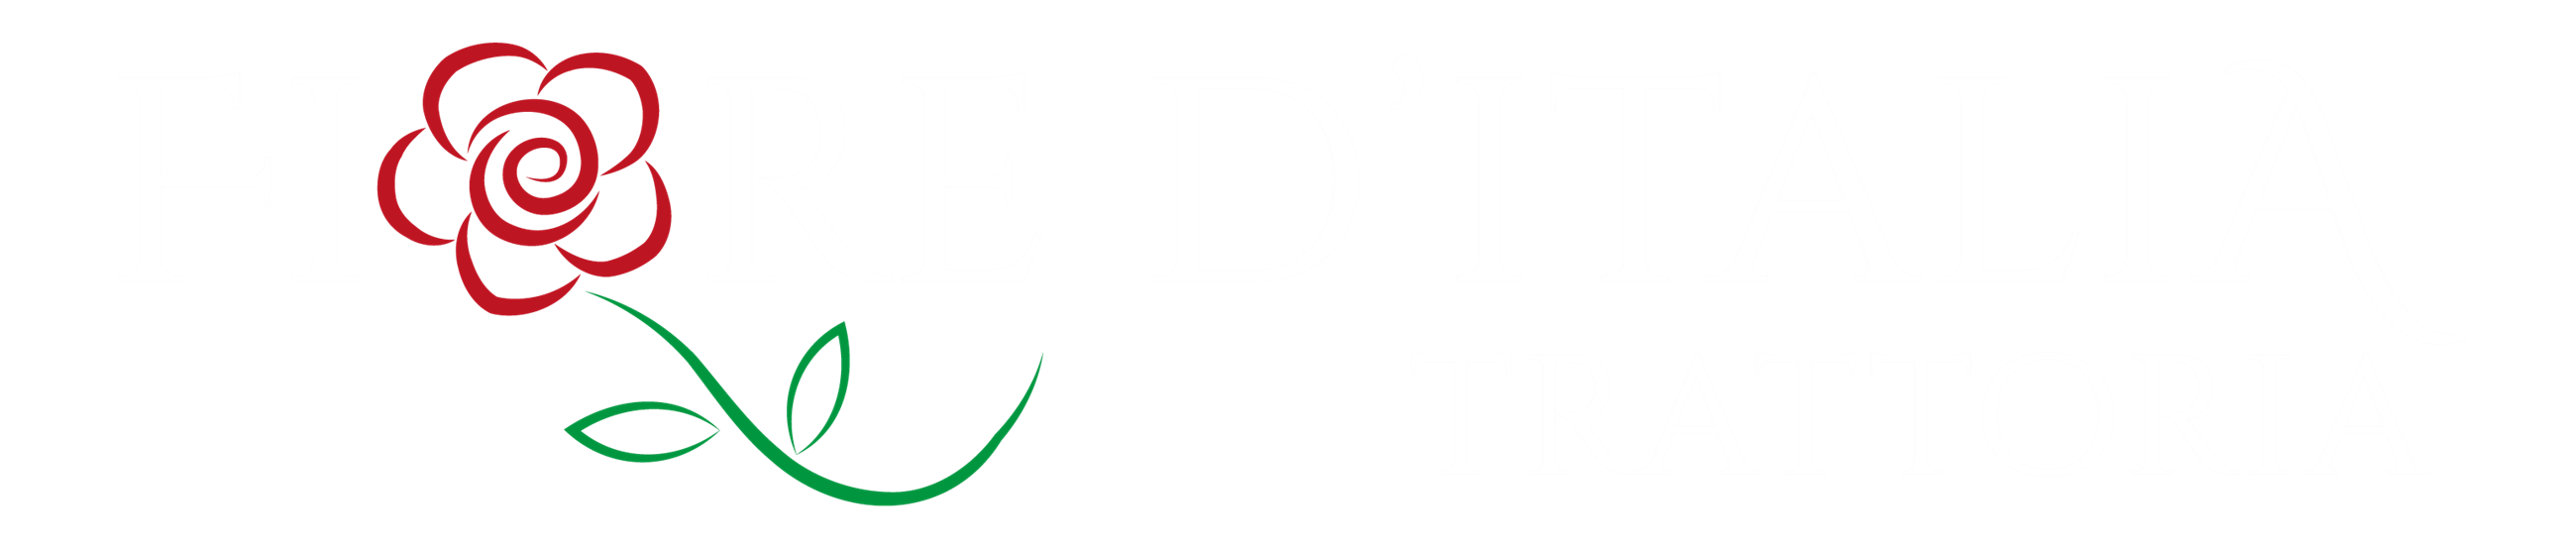 fiore d'italia logo_bred - hvid tekst